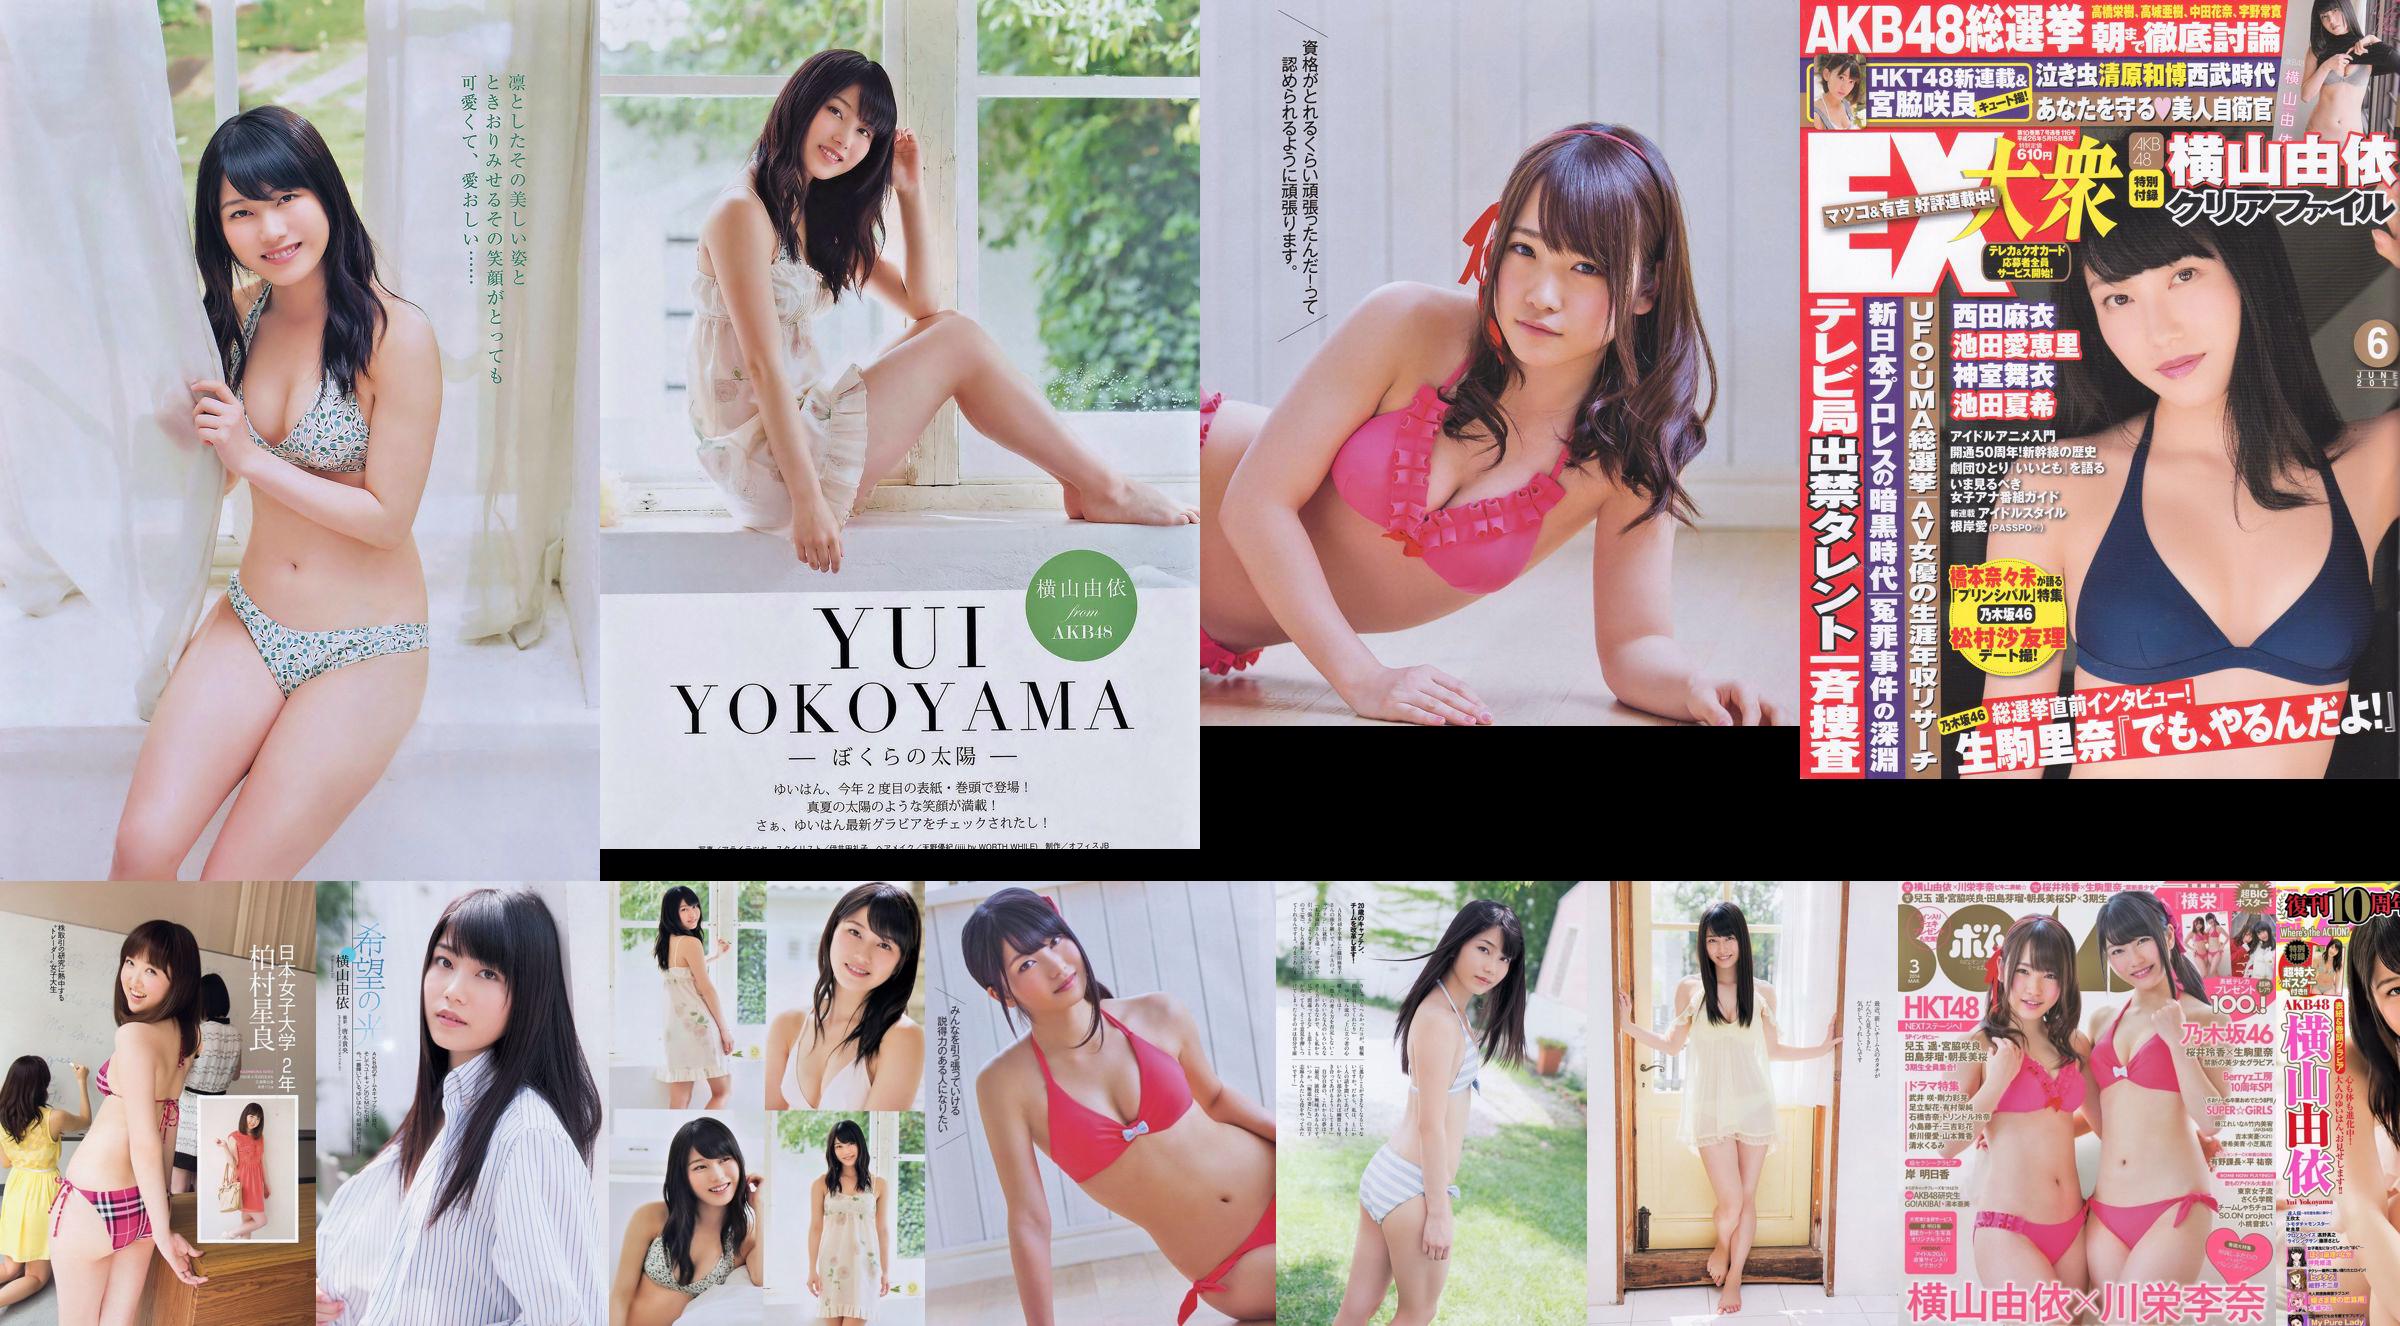 Yui Yokoyama Nozomi Sasaki Rina Koike Asuka Kuramochi Miwako Kakei Risa Yoshiki Ruri Shinato [Weekly Playboy] 2013 No.38 Fotografia No.de9969 Pagina 7